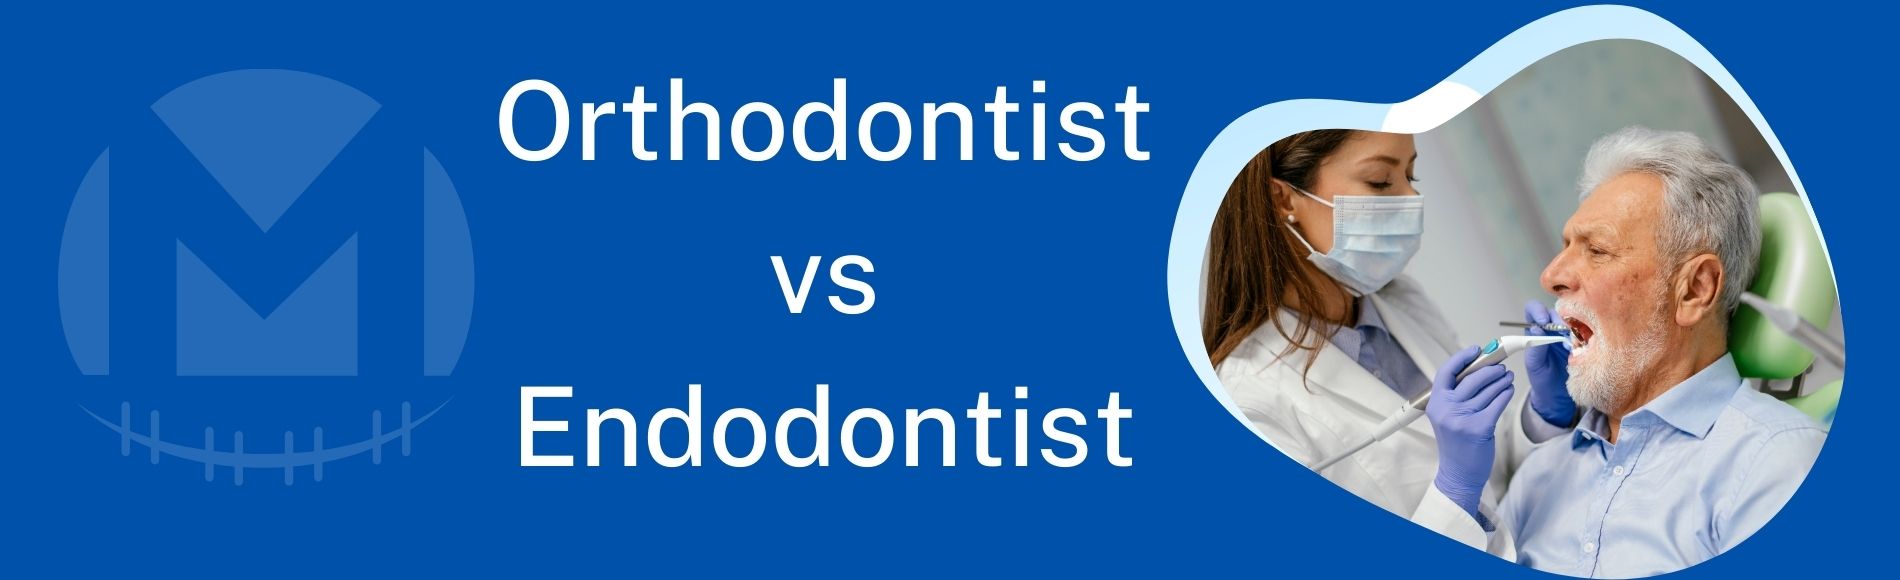 Orthodontist vs Endodontist